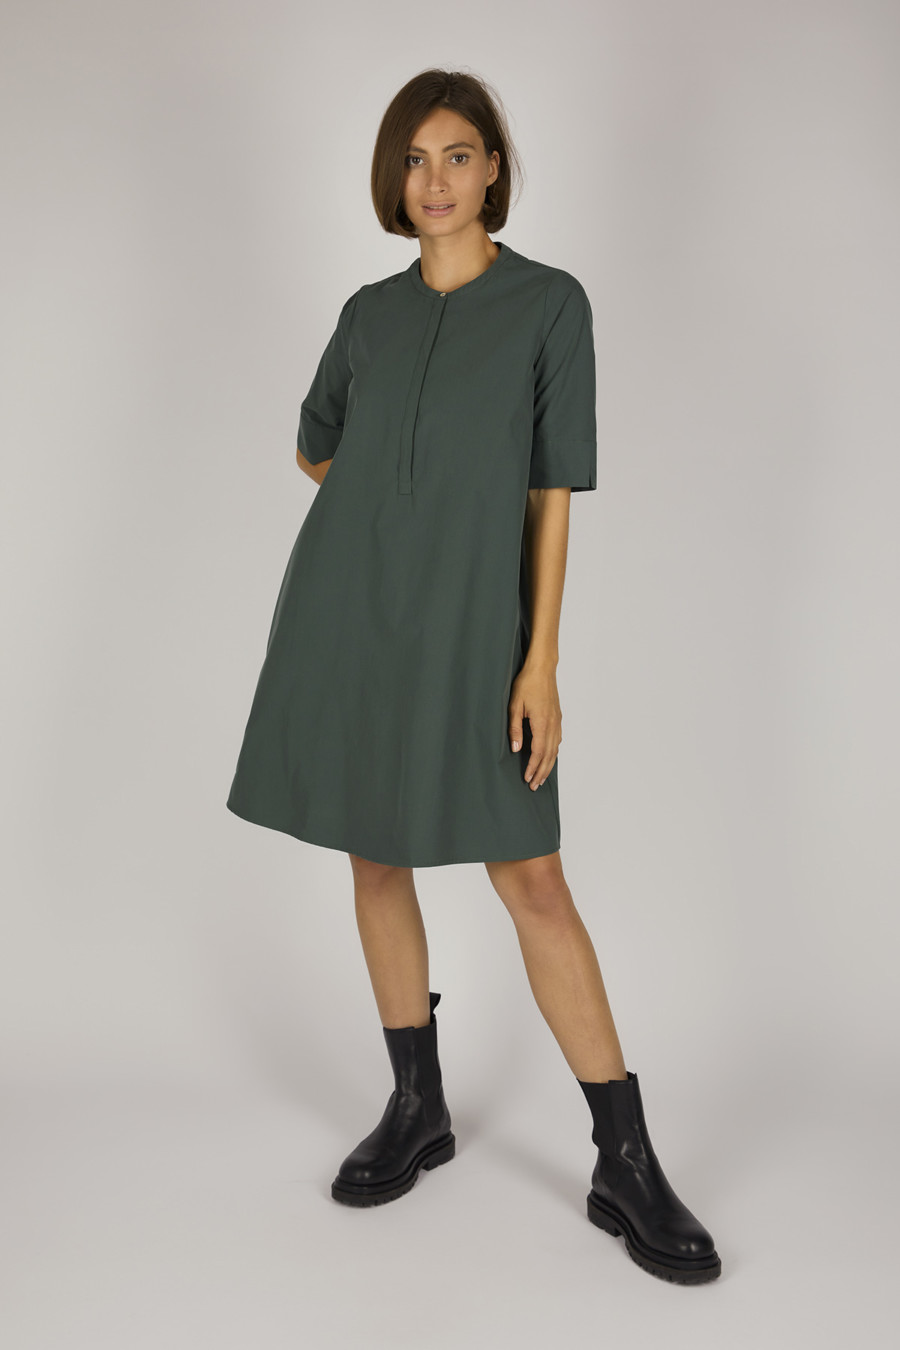 PHOEBE – Hemdblusenkleid mit verlängertem Halbarm – Farbe: Moss